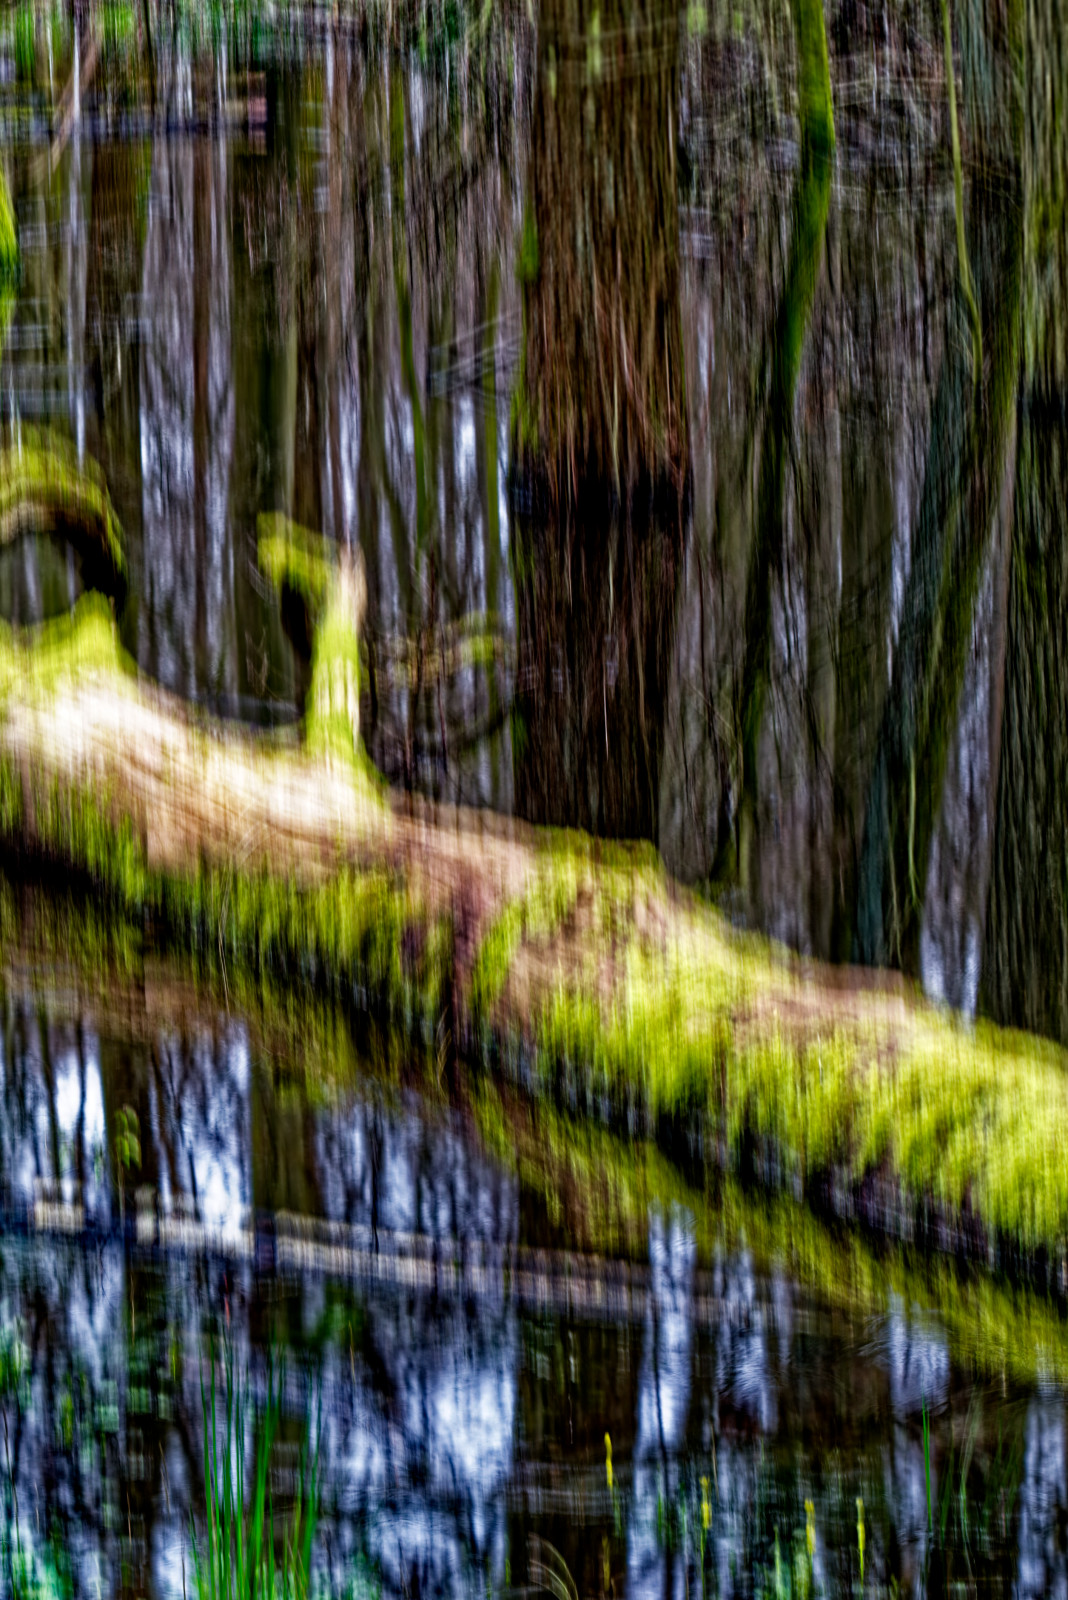 Verwischtes Bild eines BaumStamms, der im Wasser liegt. Die Kamera wurde während der Aufnahme senkrecht bewegt.